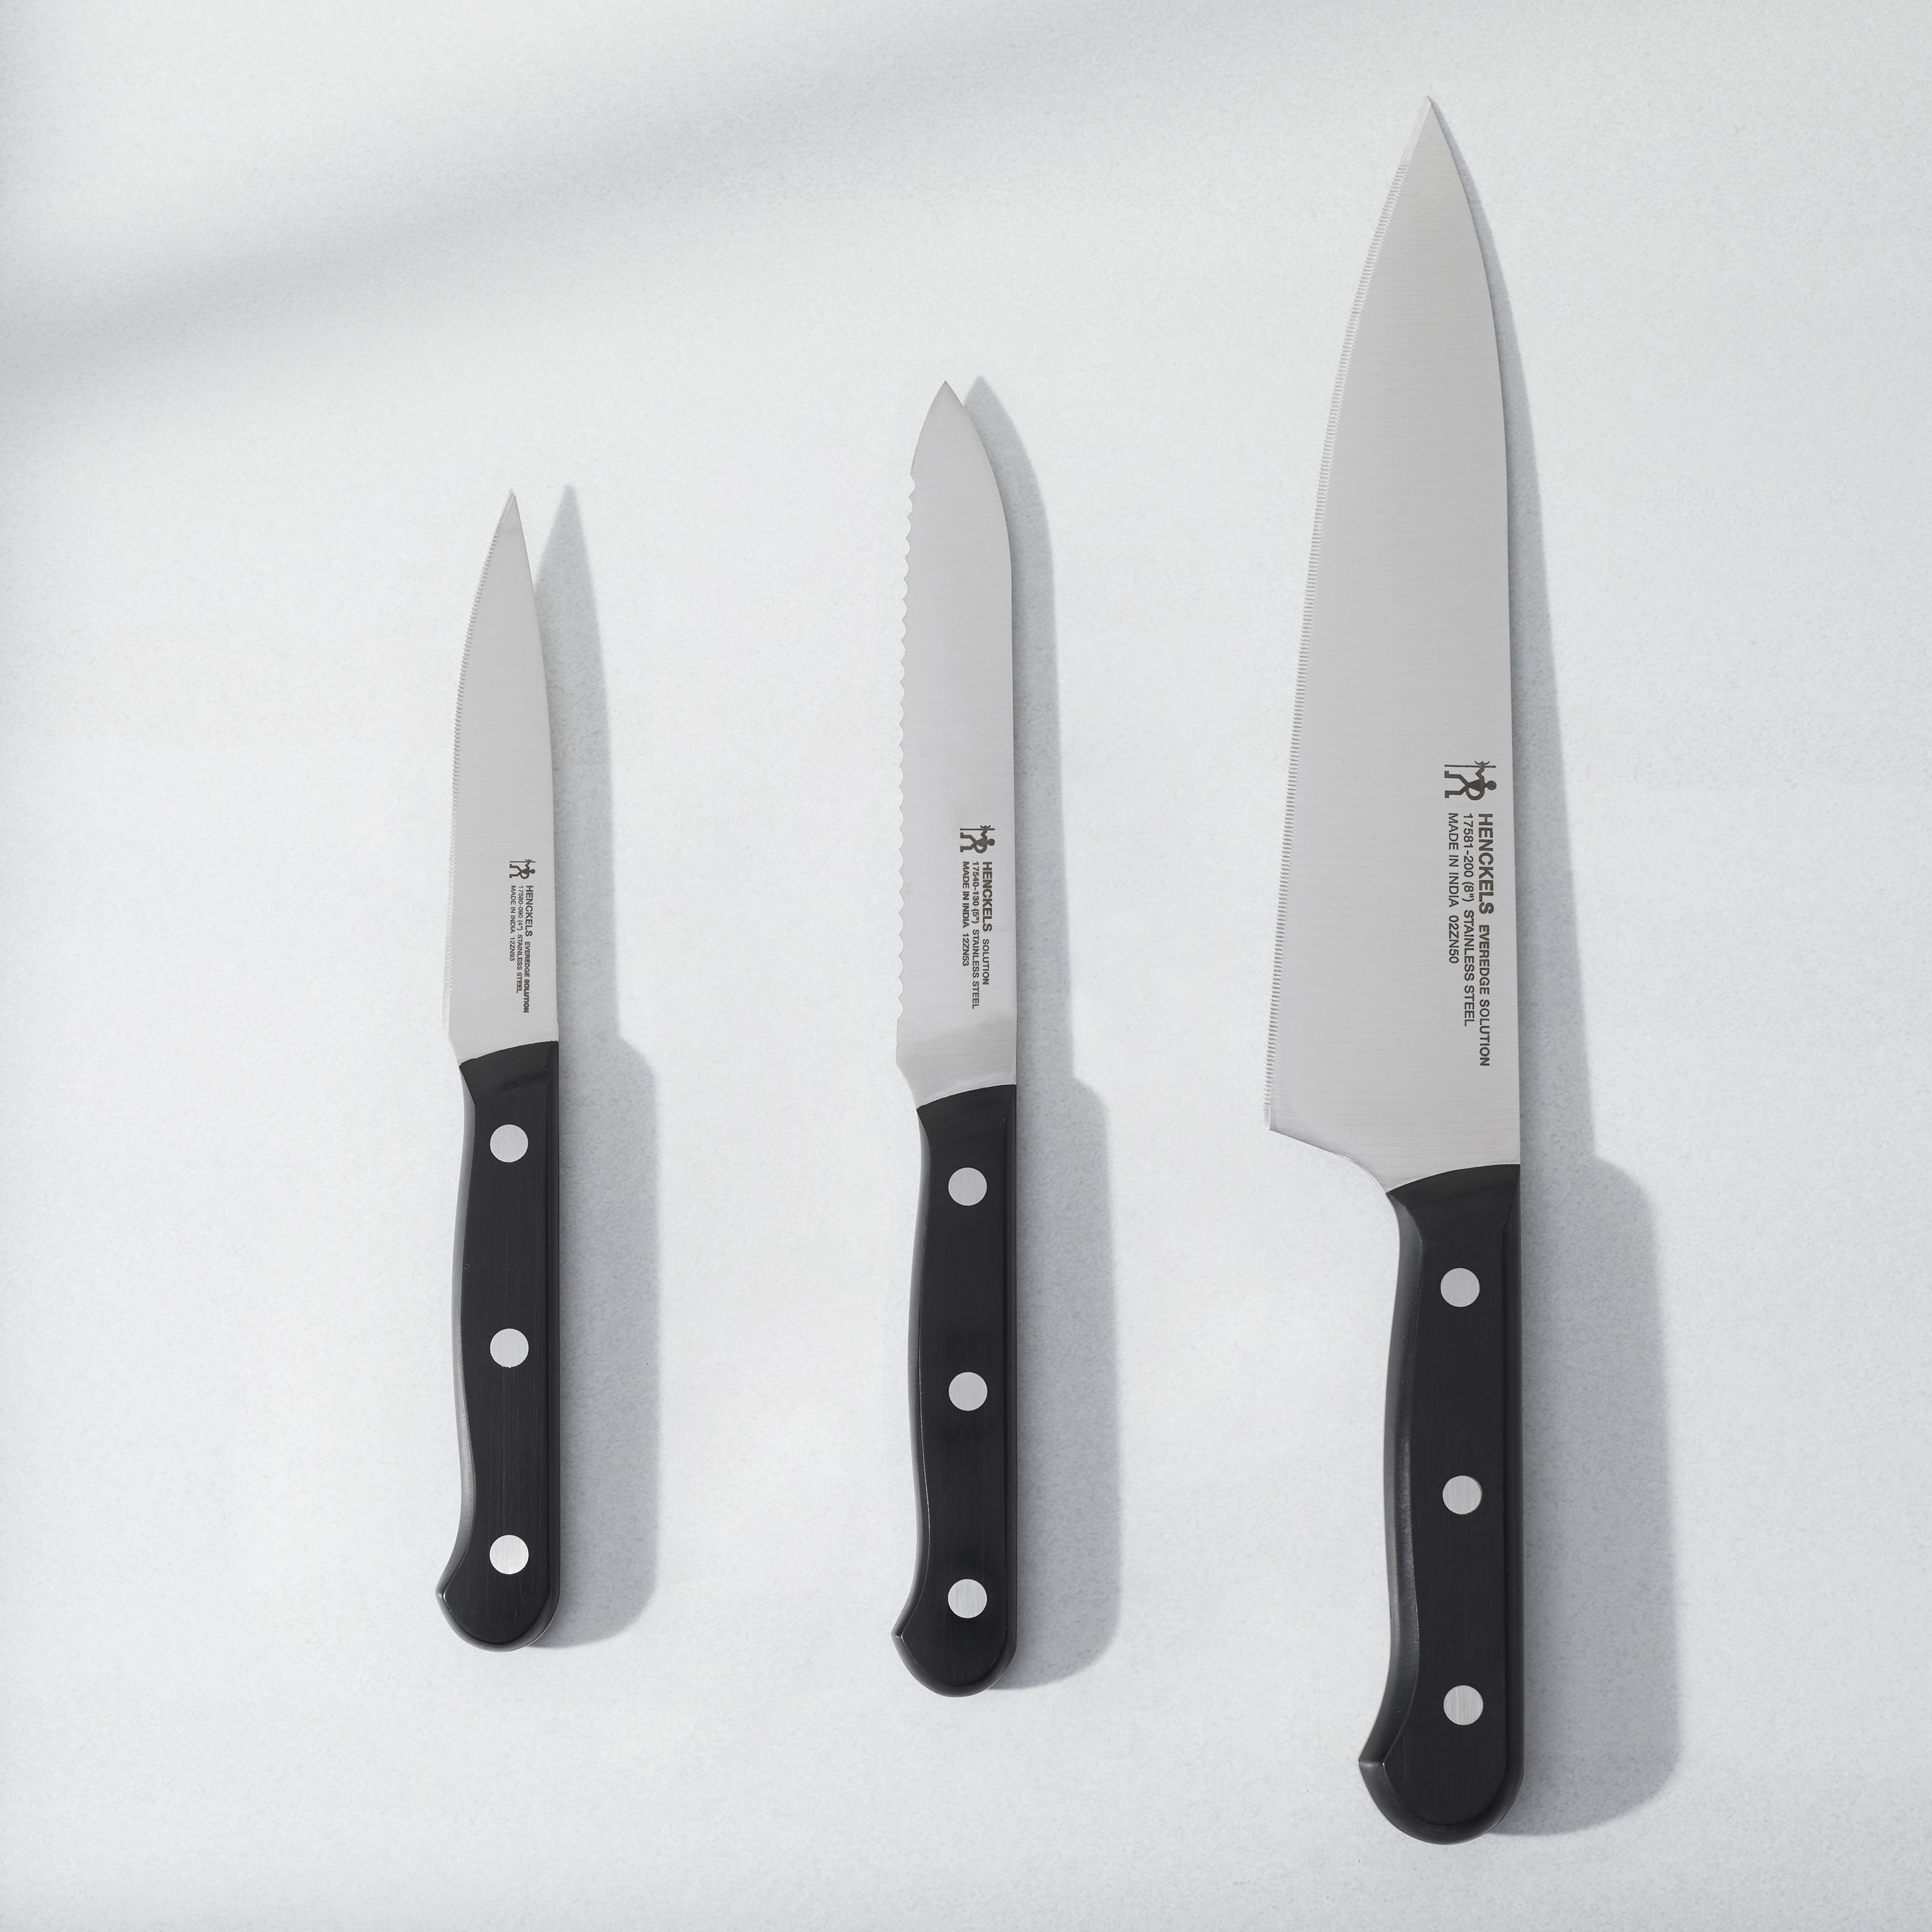 Buy Henckels Everedge Solution Knife set